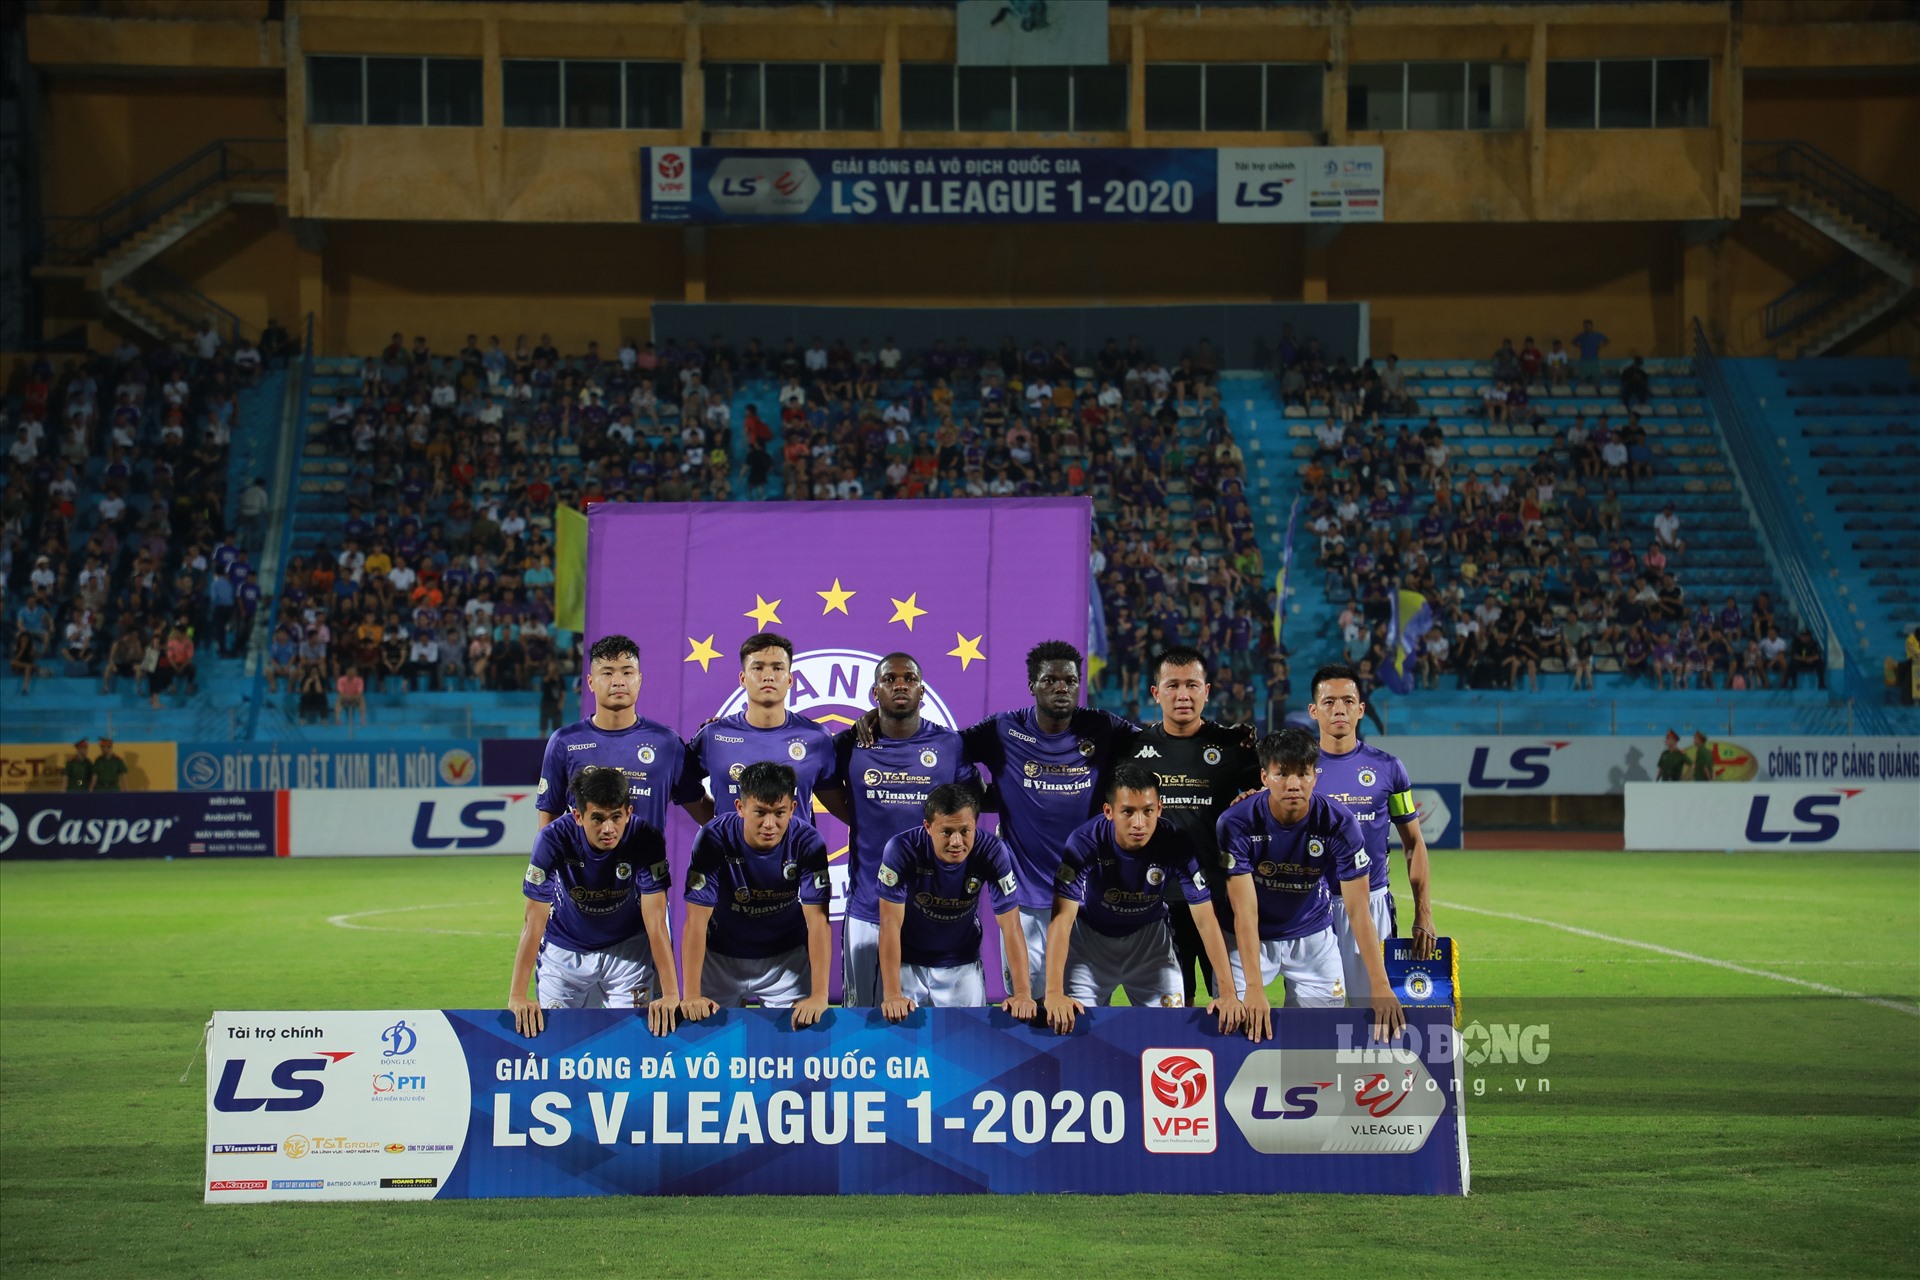 Trước trận đấu tối 30.6, Hà Nội FC và Sài Gòn FC cùng có 10 điểm, đứng lần lượt ở vị trí thứ 3 và 5 trên bảng xếp hạng.